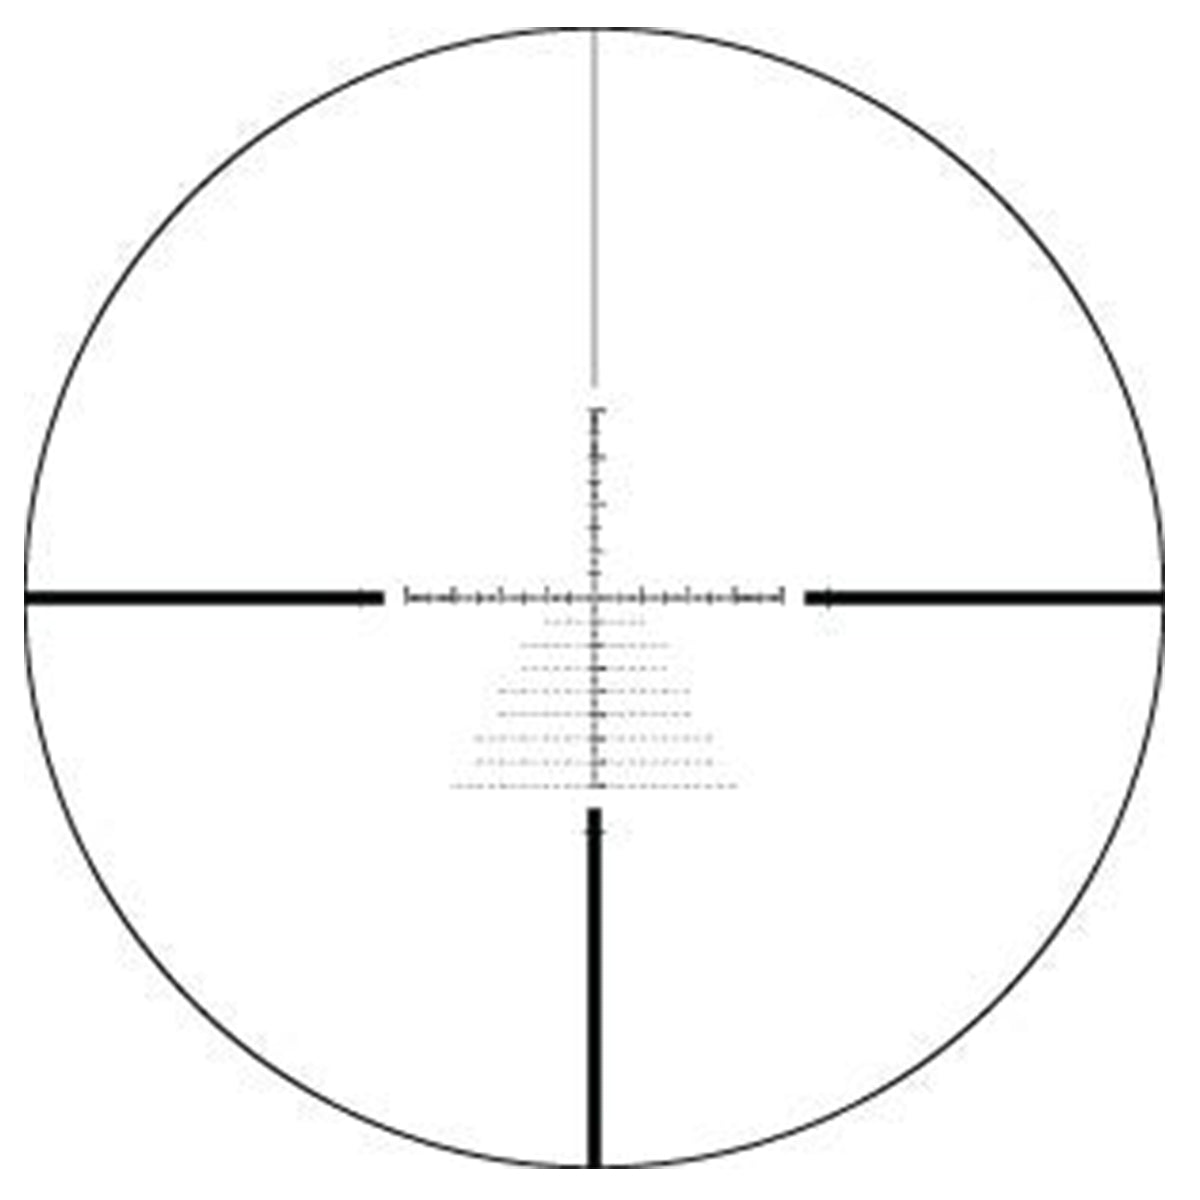 Vortex Viper HS 6-24x50 XLR-MOA FFP LR Riflescope by Vortex Optics | Optics - goHUNT Shop